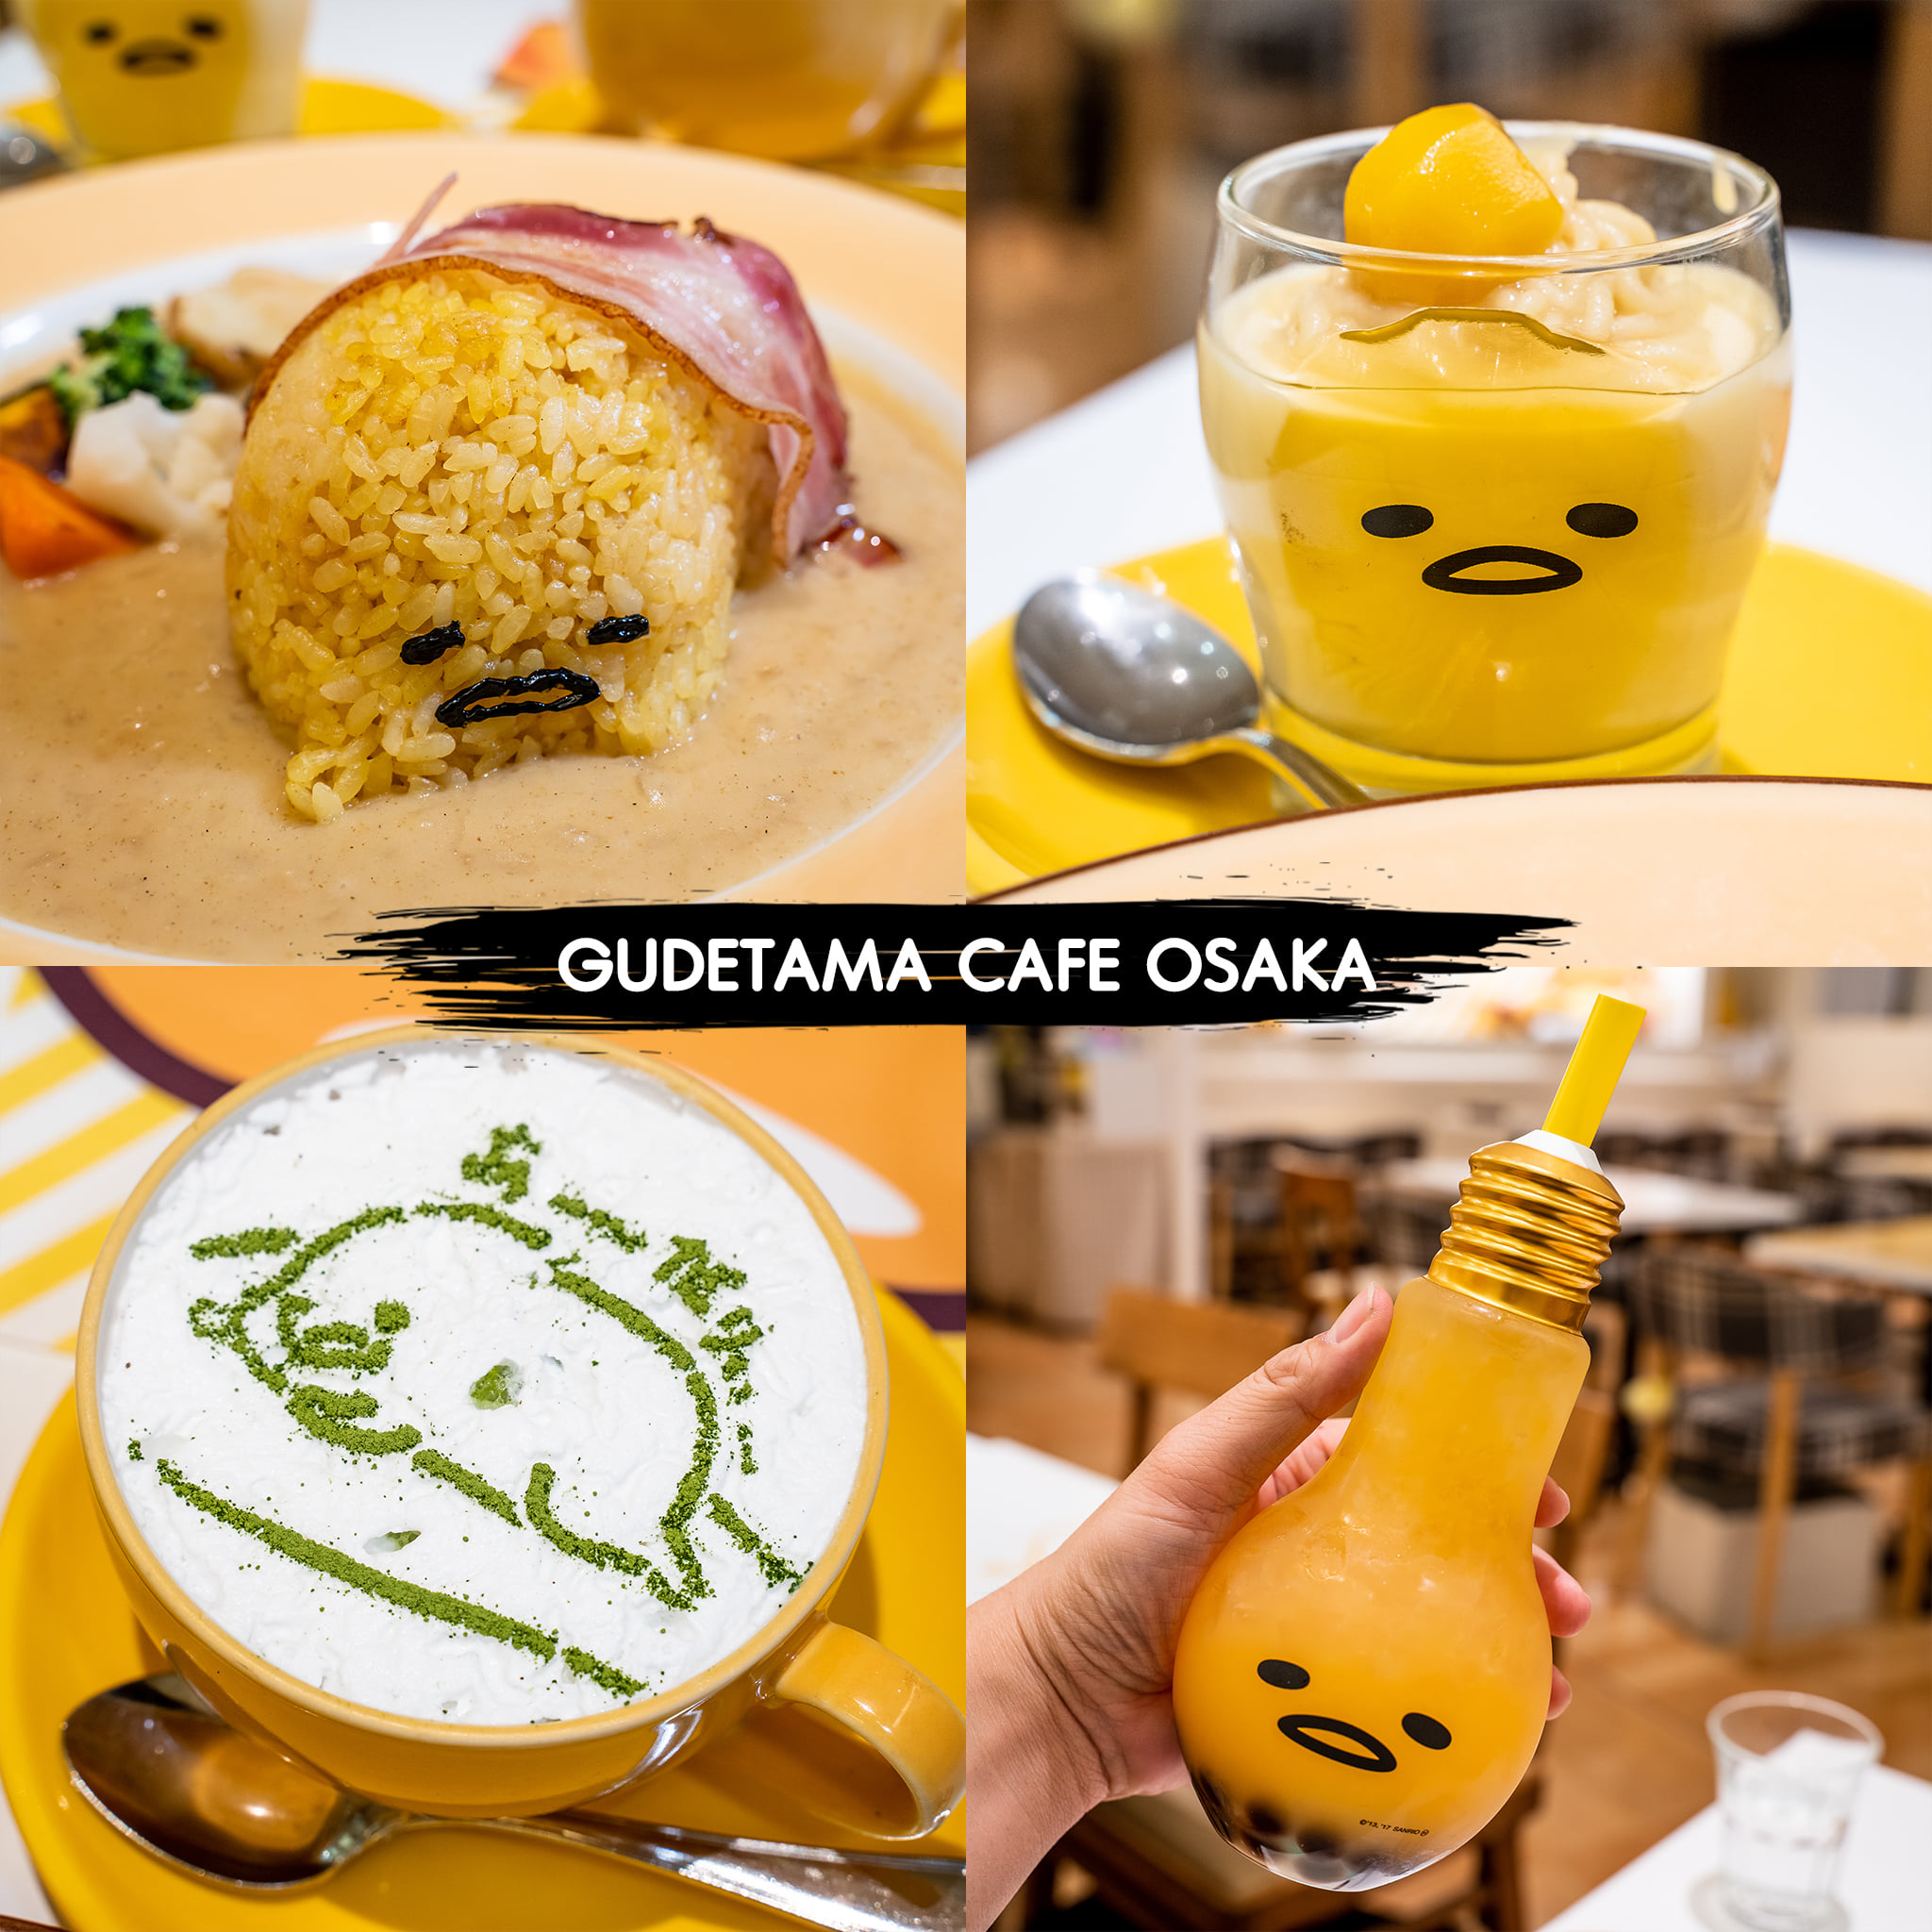 Gudetama Cafe in Osaka